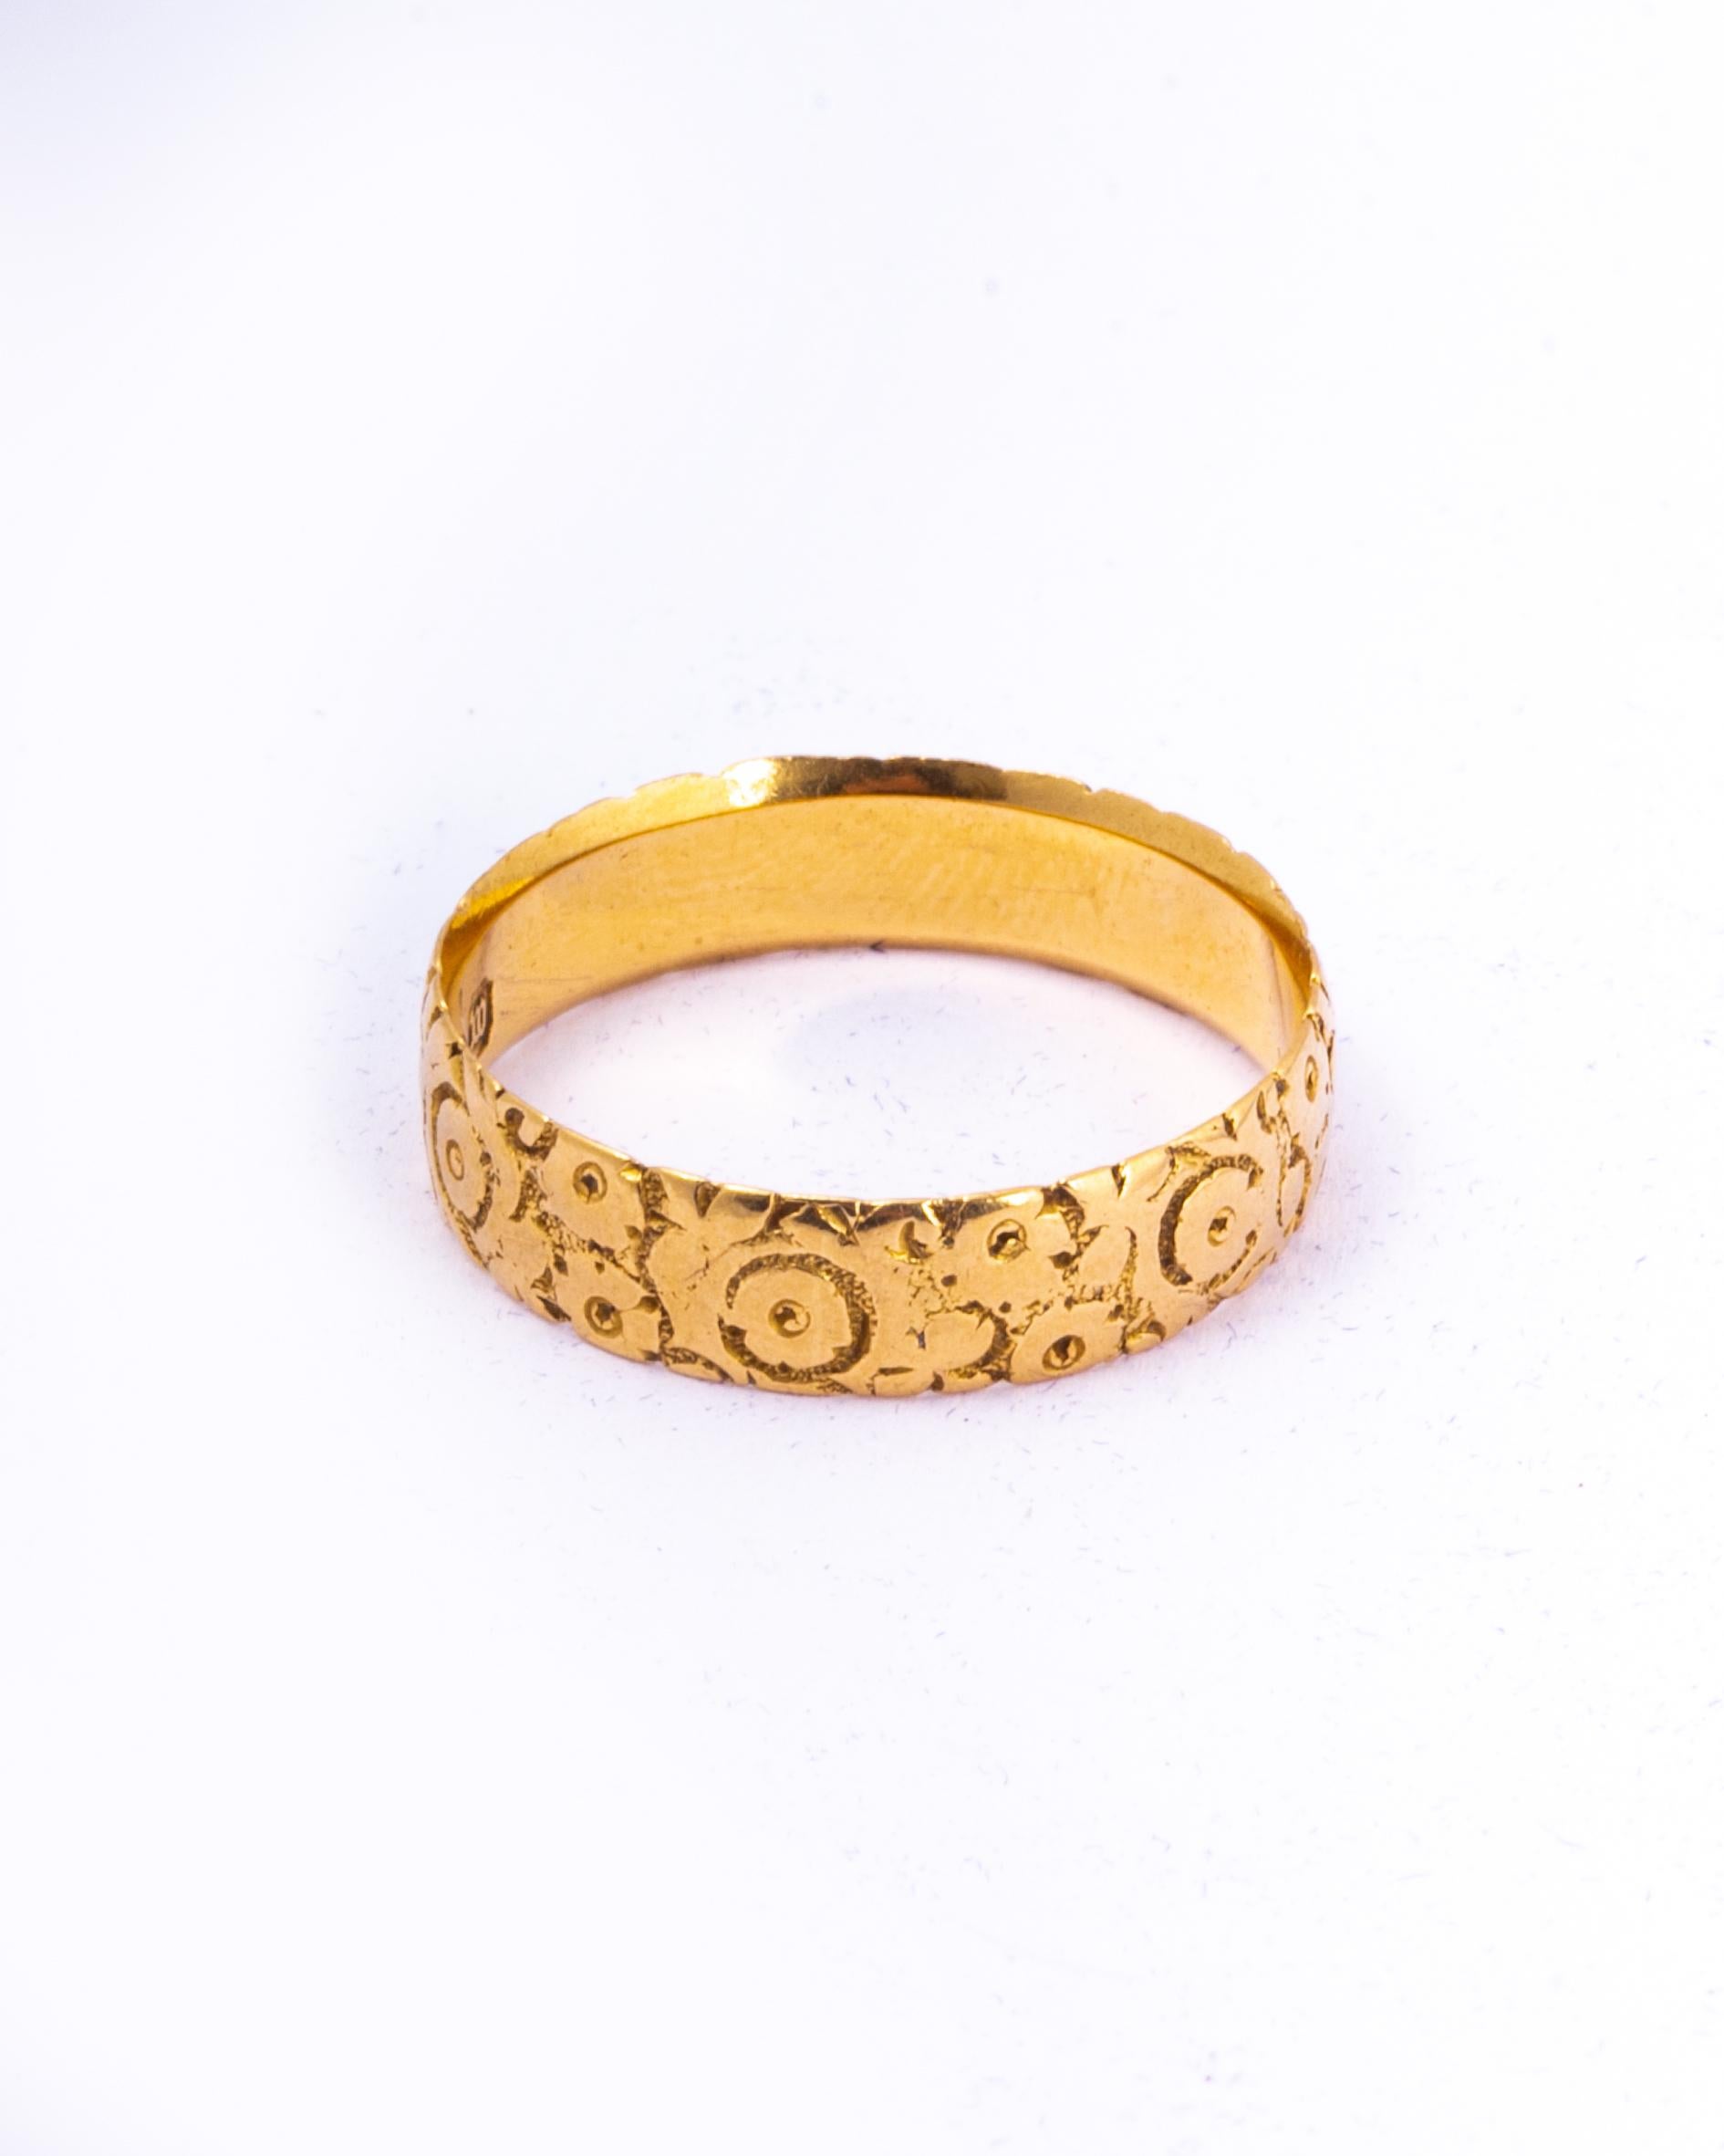 Dieses wunderschön dekorative Band aus 18-karätigem Gold besticht durch seine florale Gravur. 

Ringgröße: Q 1/4 oder 8 1/4 
Bandbreite: 5mm

Gewicht: 3,63g